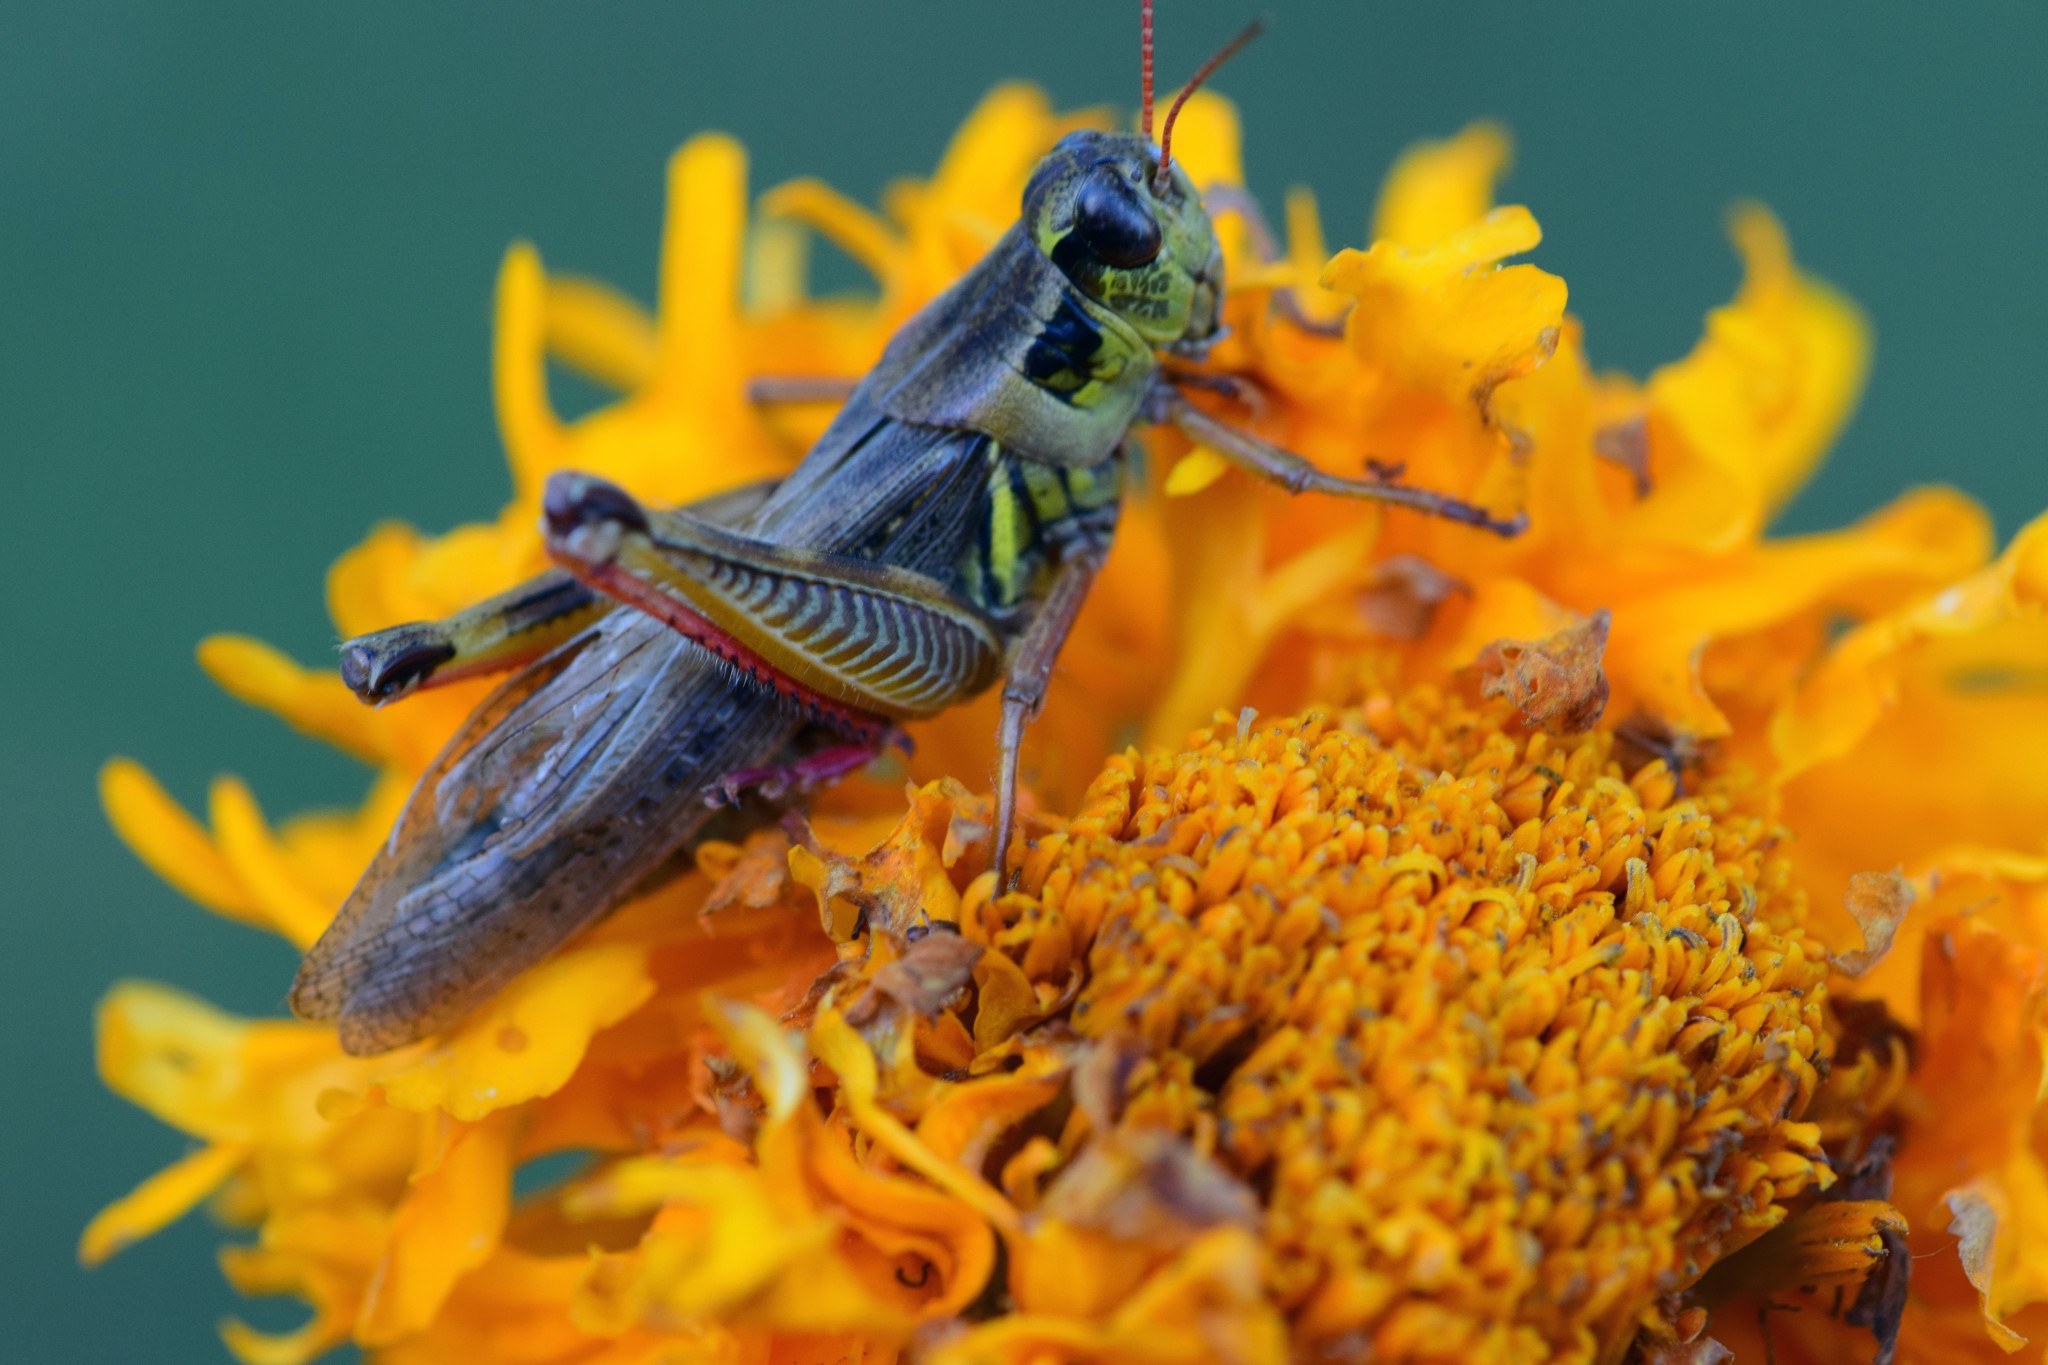 Grasshopper on Flower